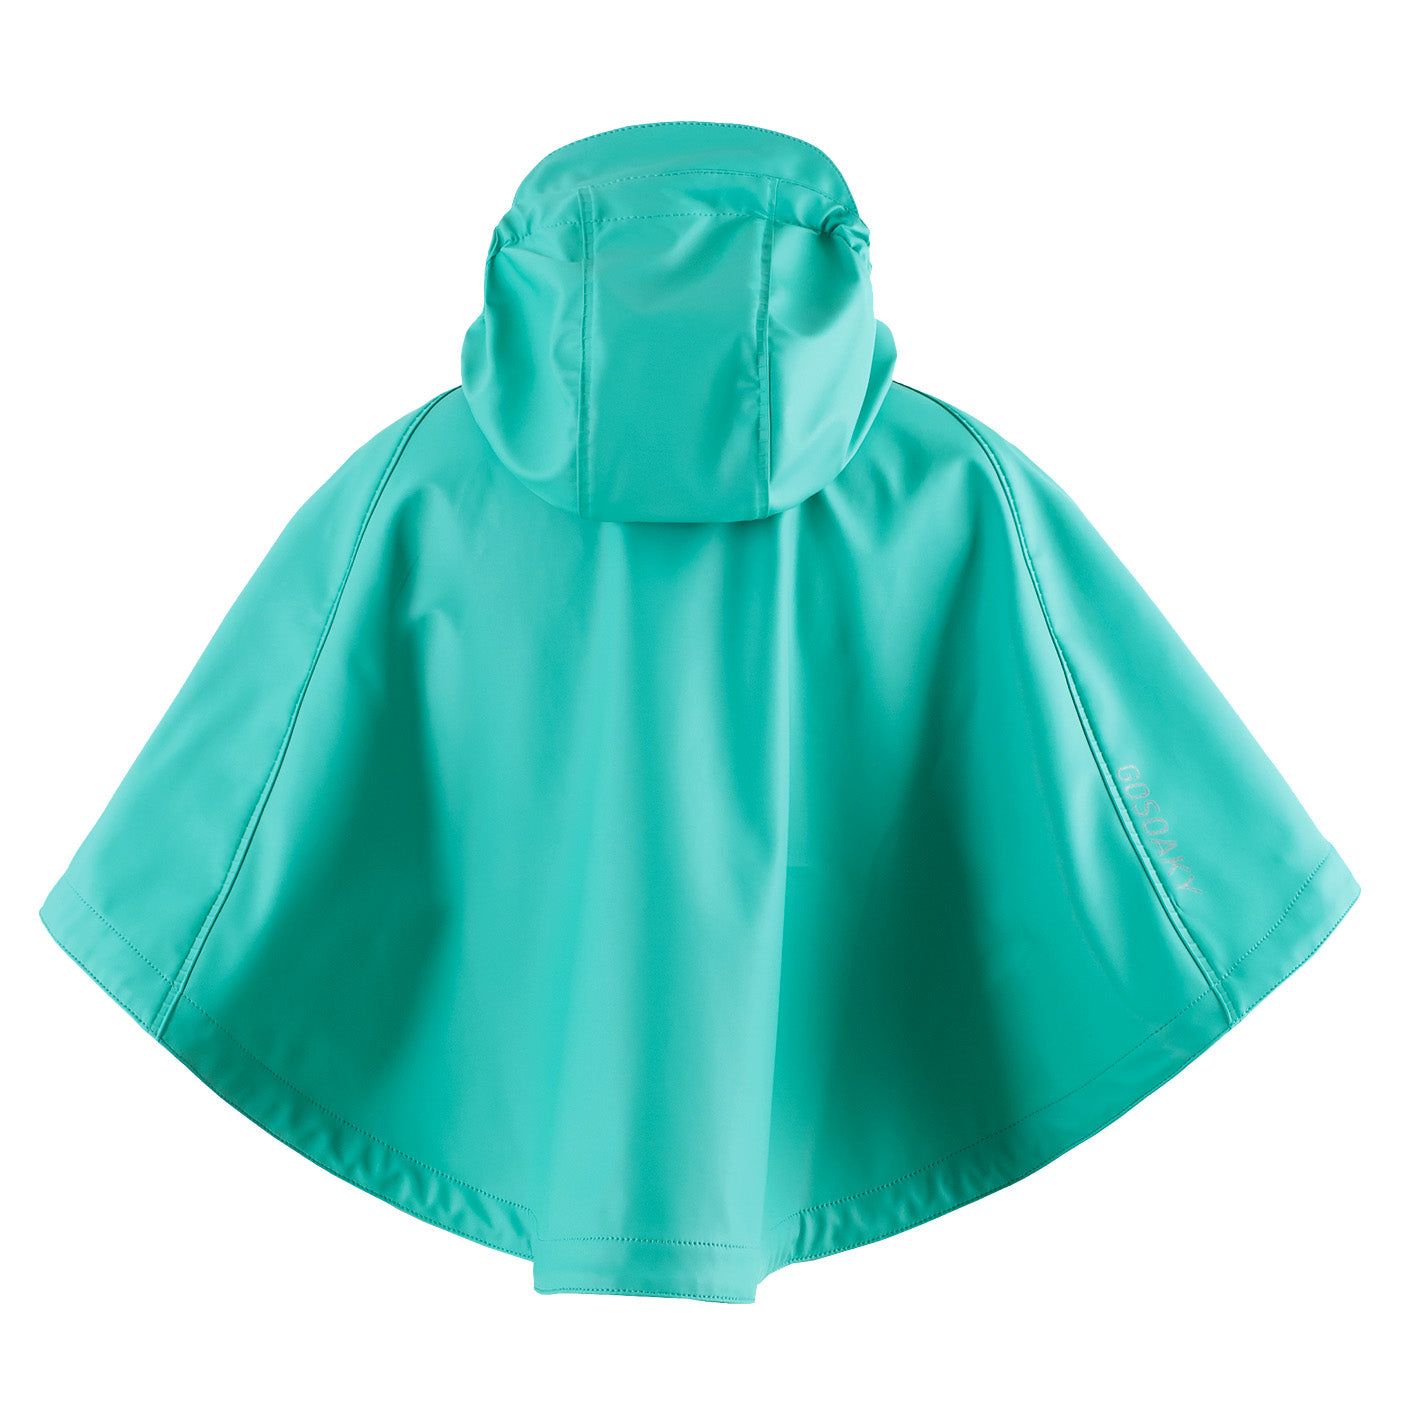 GOSOAKY-CROUCHING-TIGER-Product-Image-rainwear-raincoat-for-kids